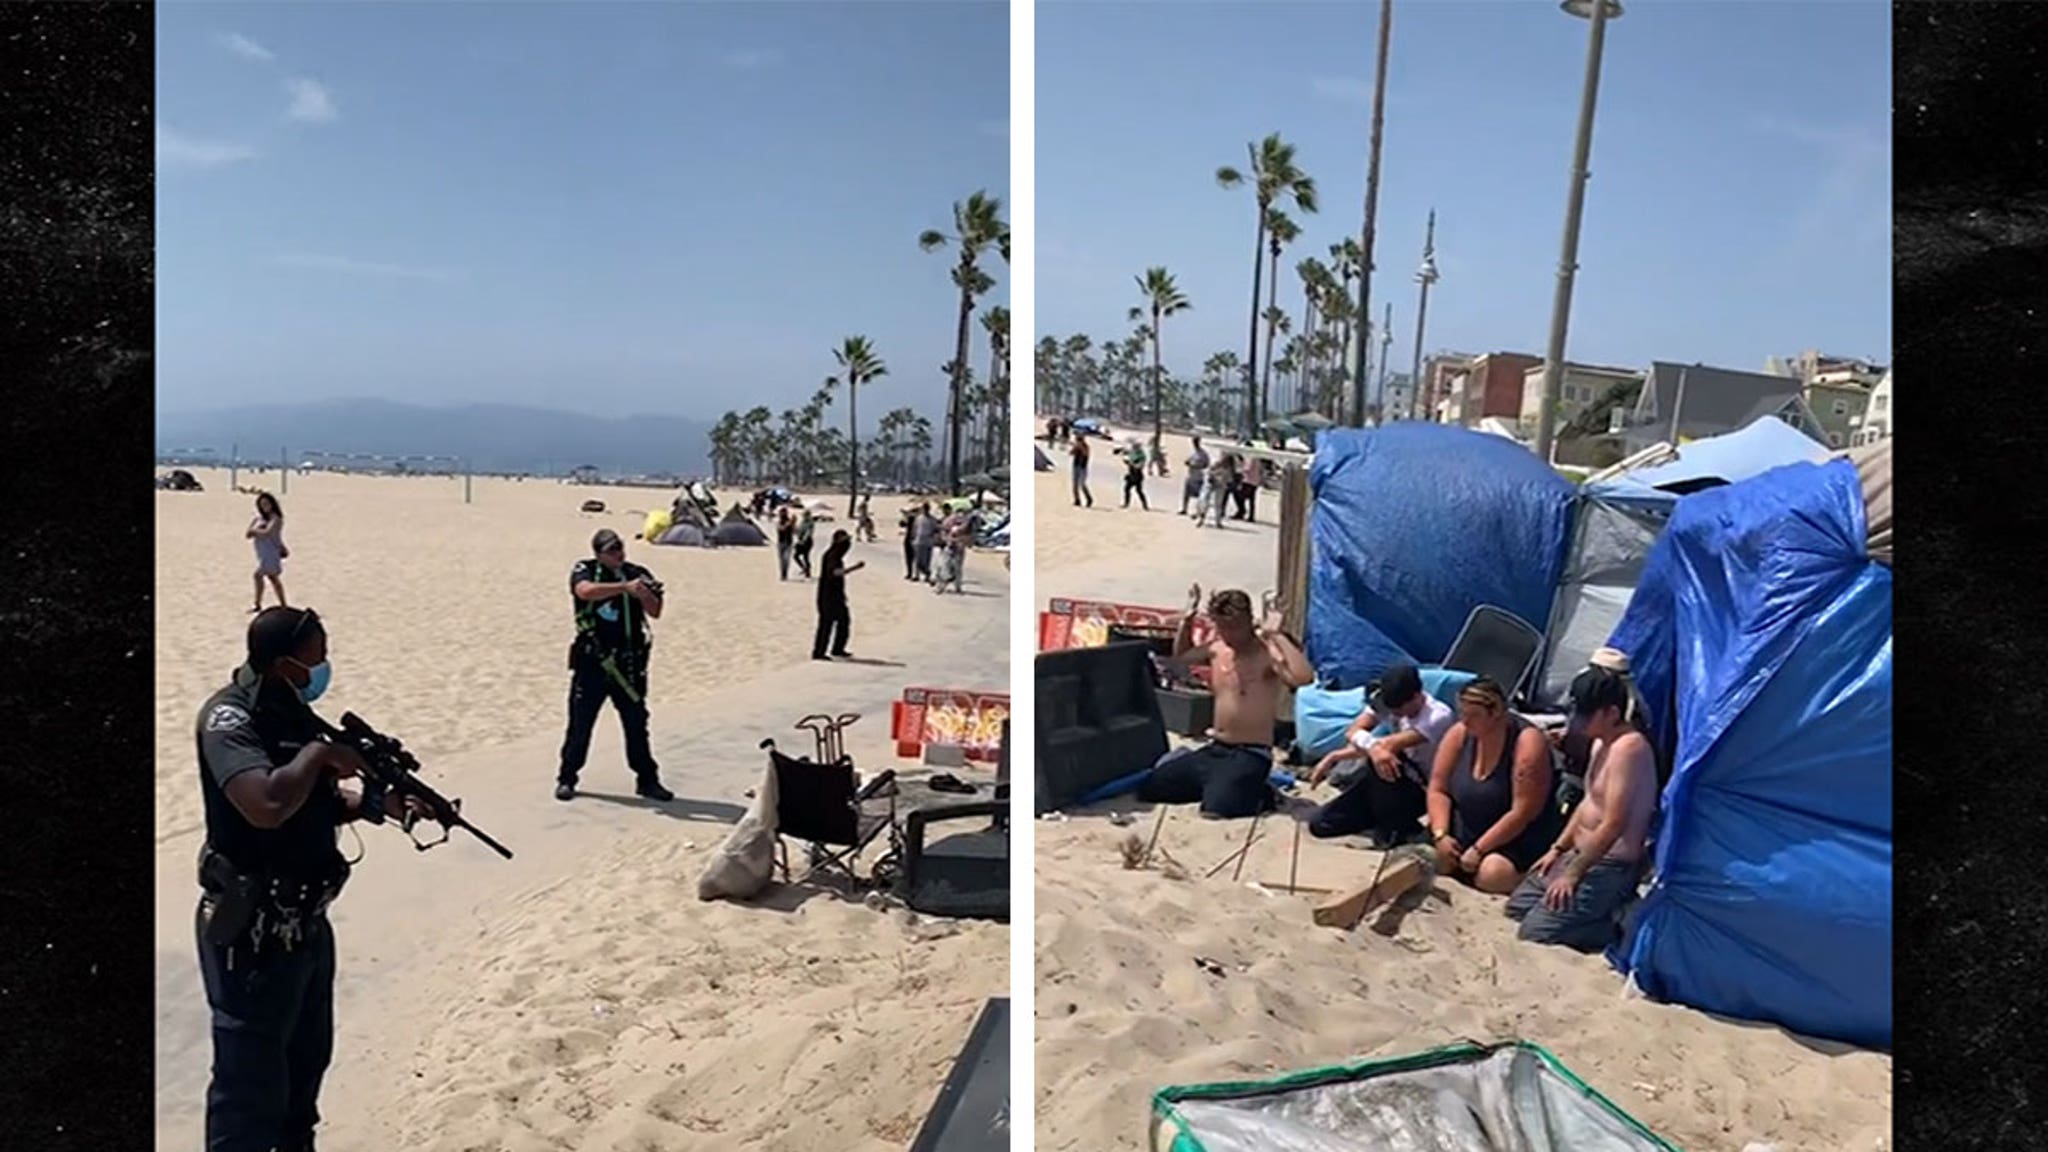 Police Point Assault Rifles at Venice Beach Homeless, Got Call for Man with Gun